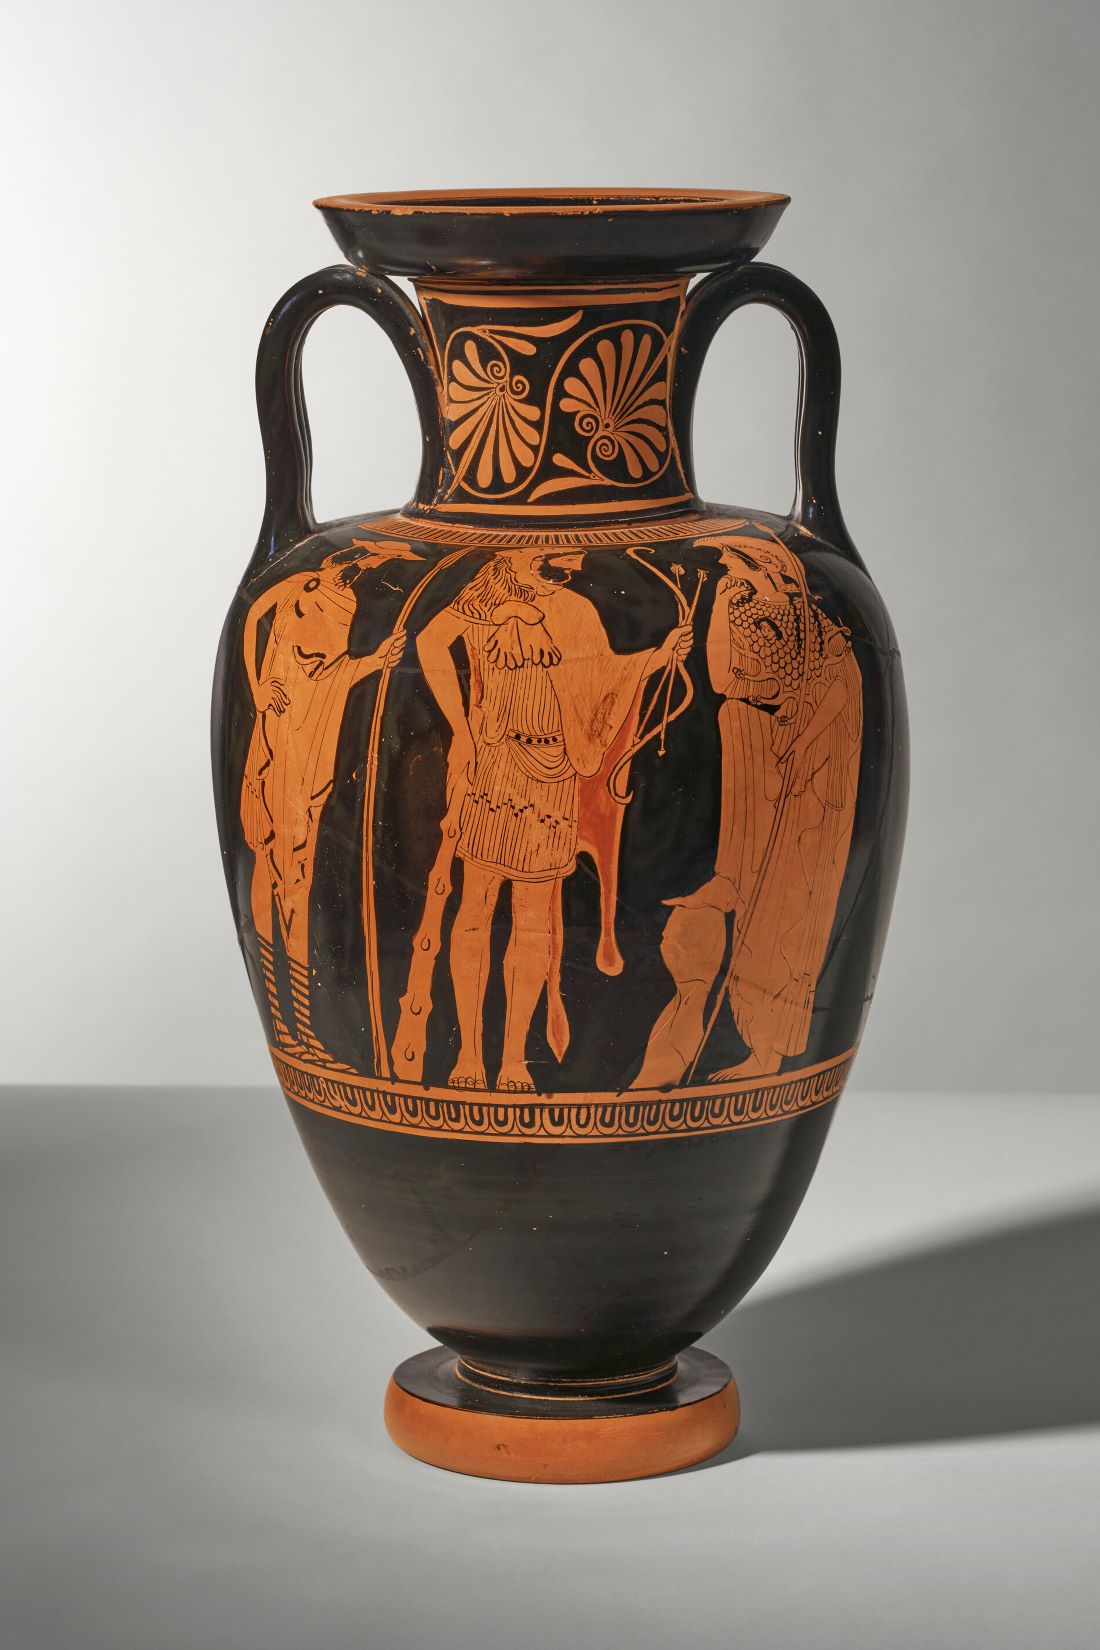 Αμφορέας (450 π.Χ.) που αποδίδεται στον Ζωγράφο της Ναυσικάς και απεικονίζει τον ήρωα Ηρακλή ανάμεσα στον Ιόλαο και τη θεά Αθηνά